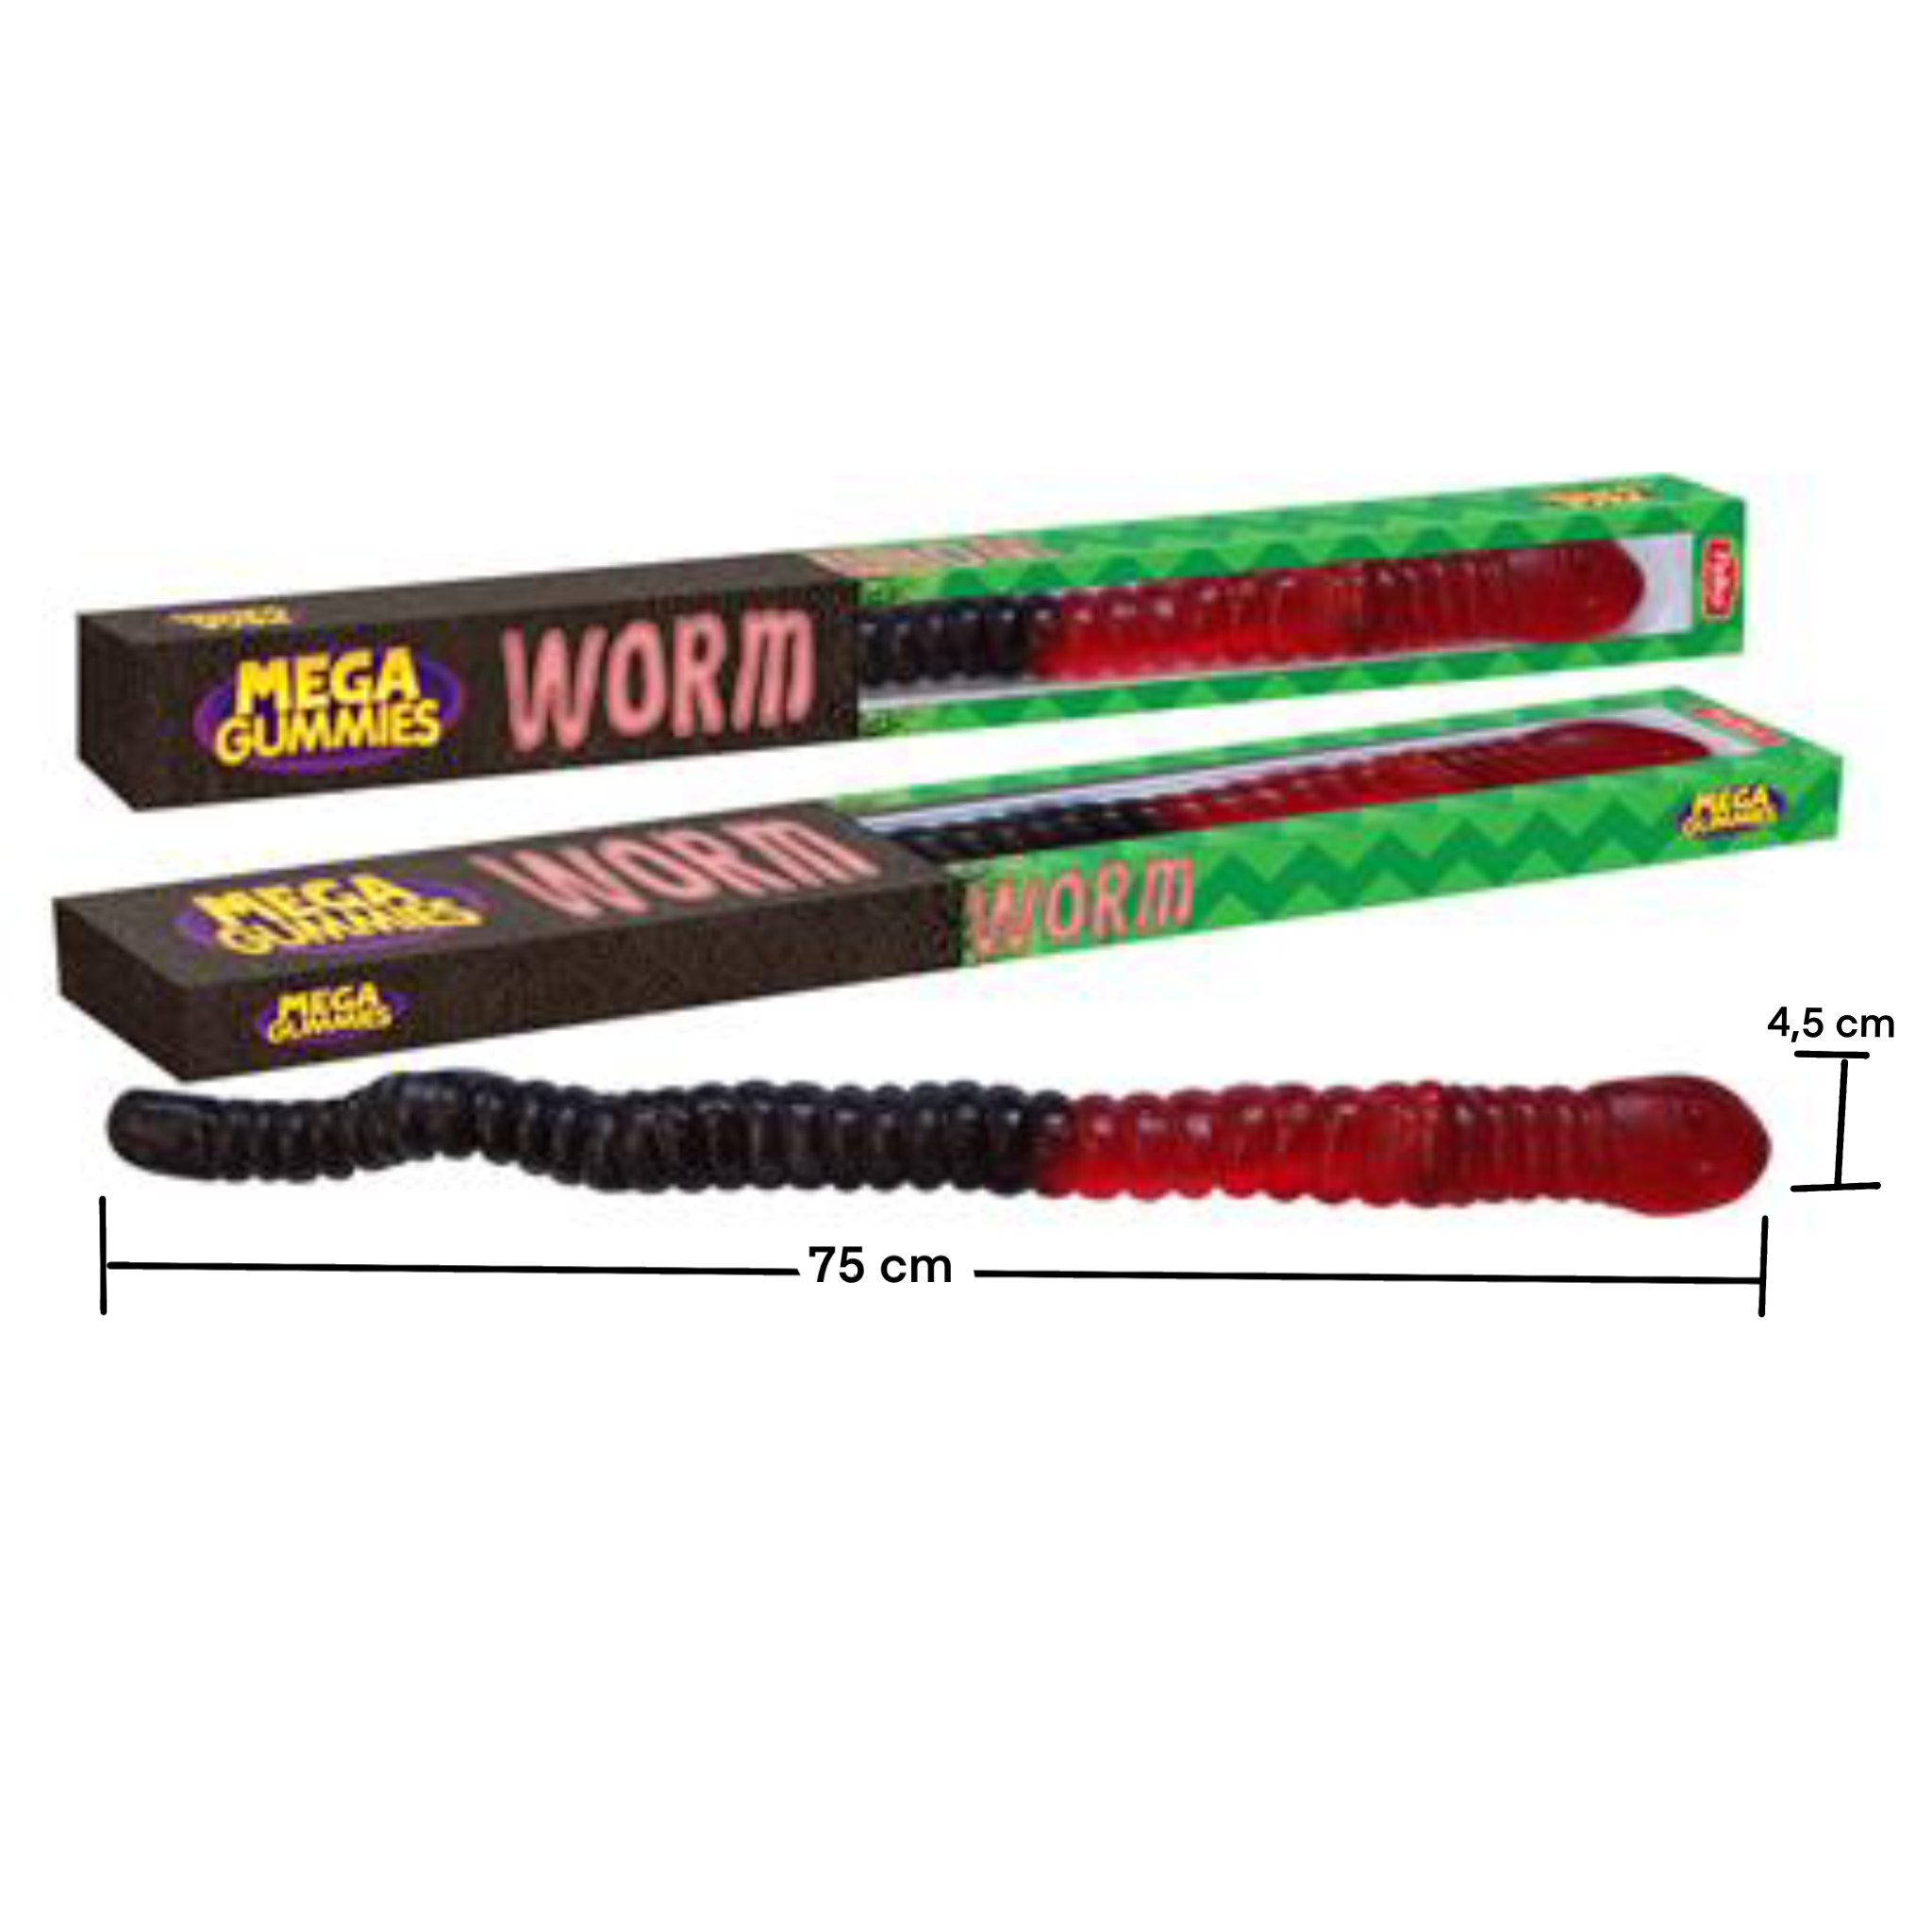 Mega gummies snoep worm